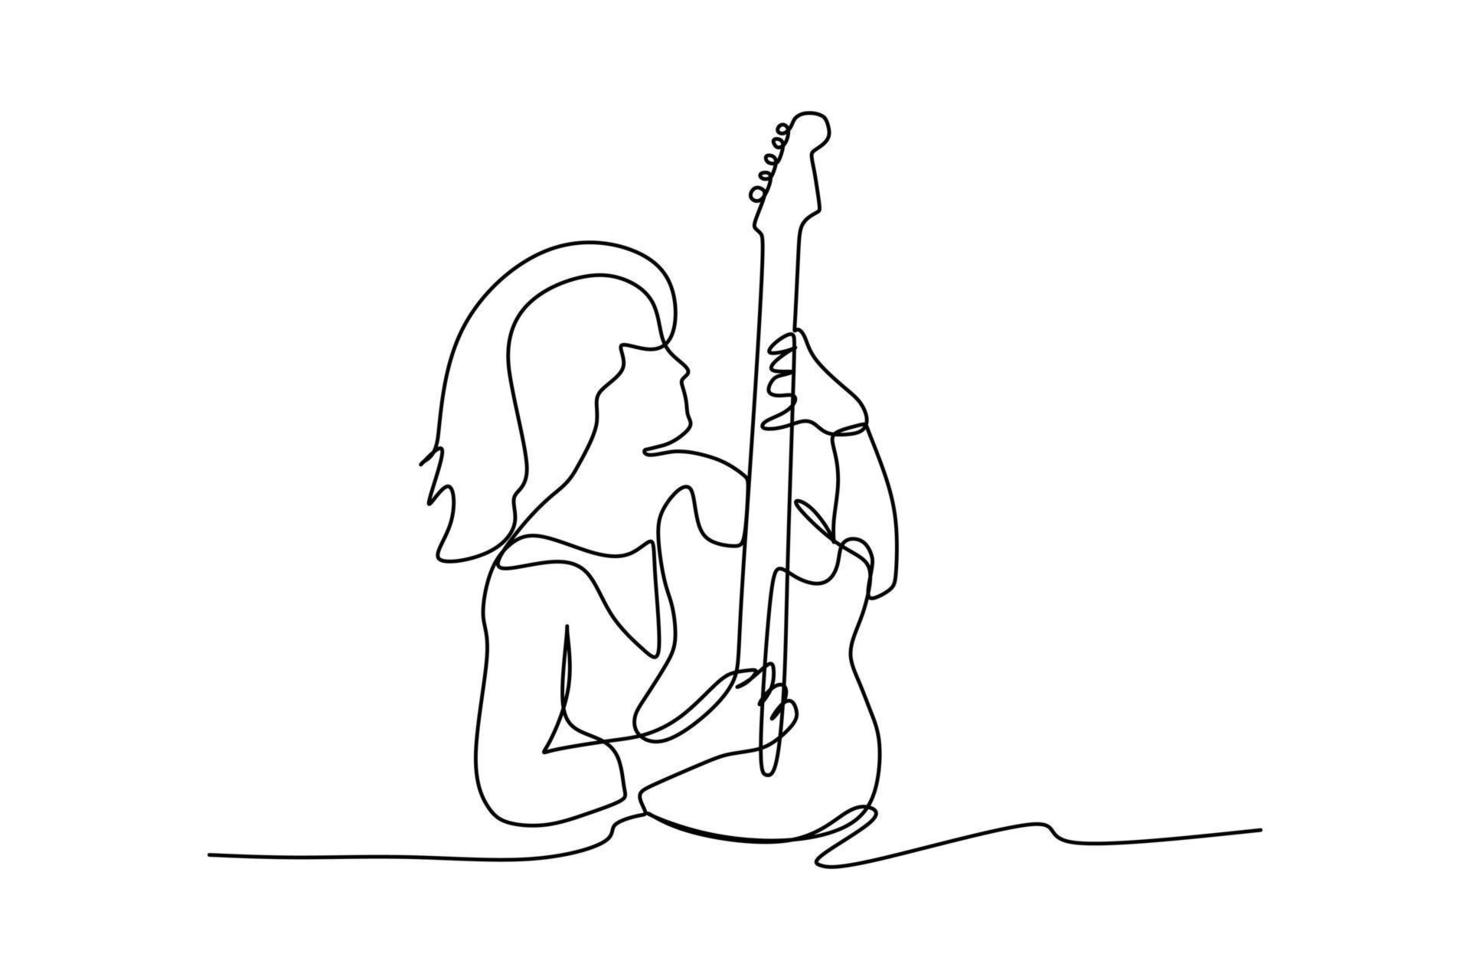 dessin en ligne continu d'un rocker guitariste assis masculin jouant de sa guitare électrique. concept de performance d'artiste musicien dynamique illustration vectorielle de dessin graphique à une seule ligne vecteur